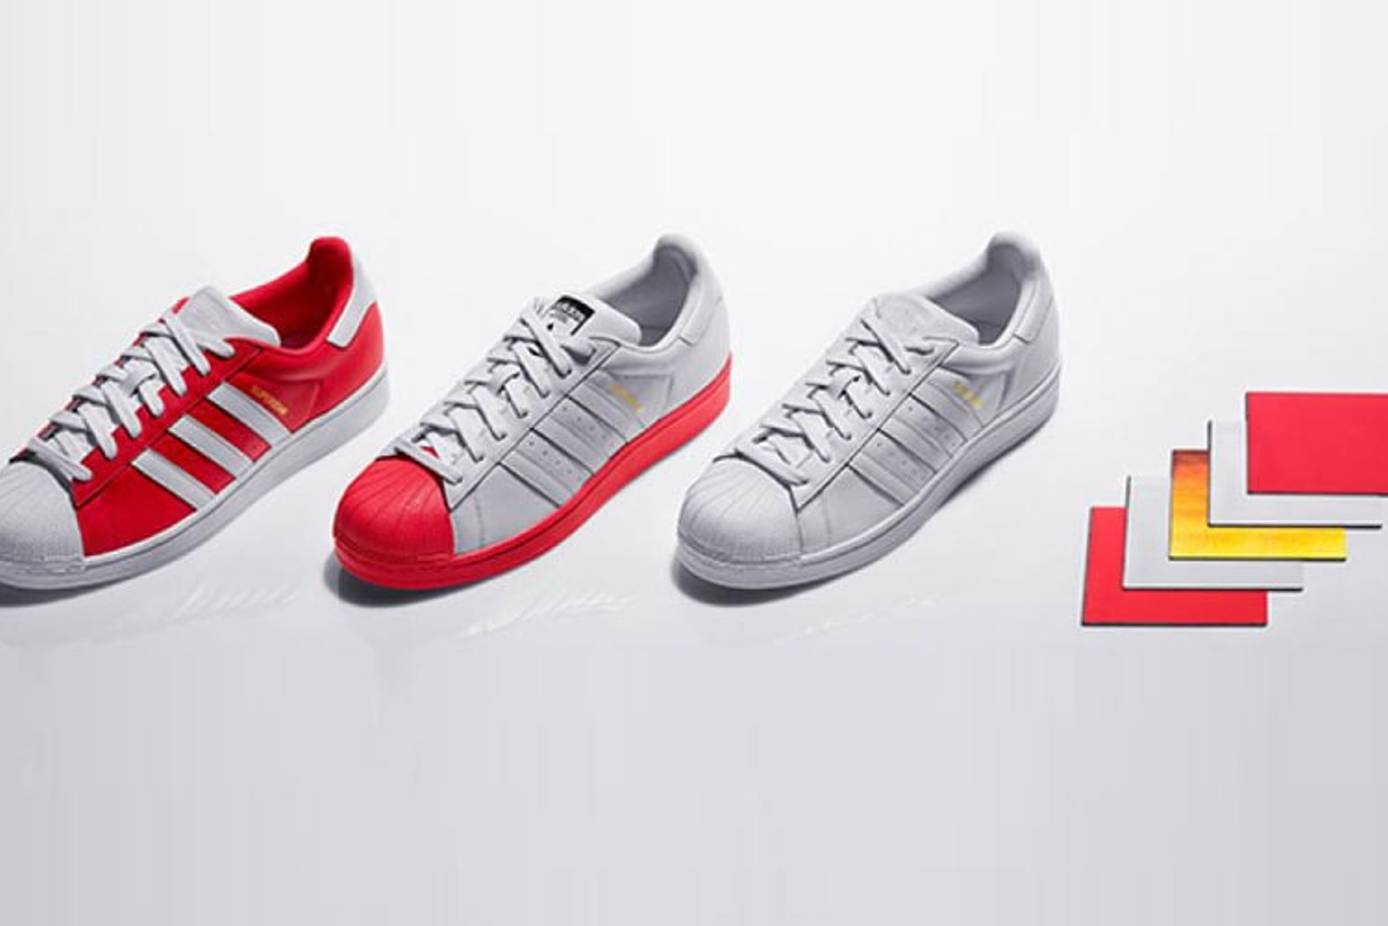 Adidas persoonlijk schoenontwerp aan Zalando